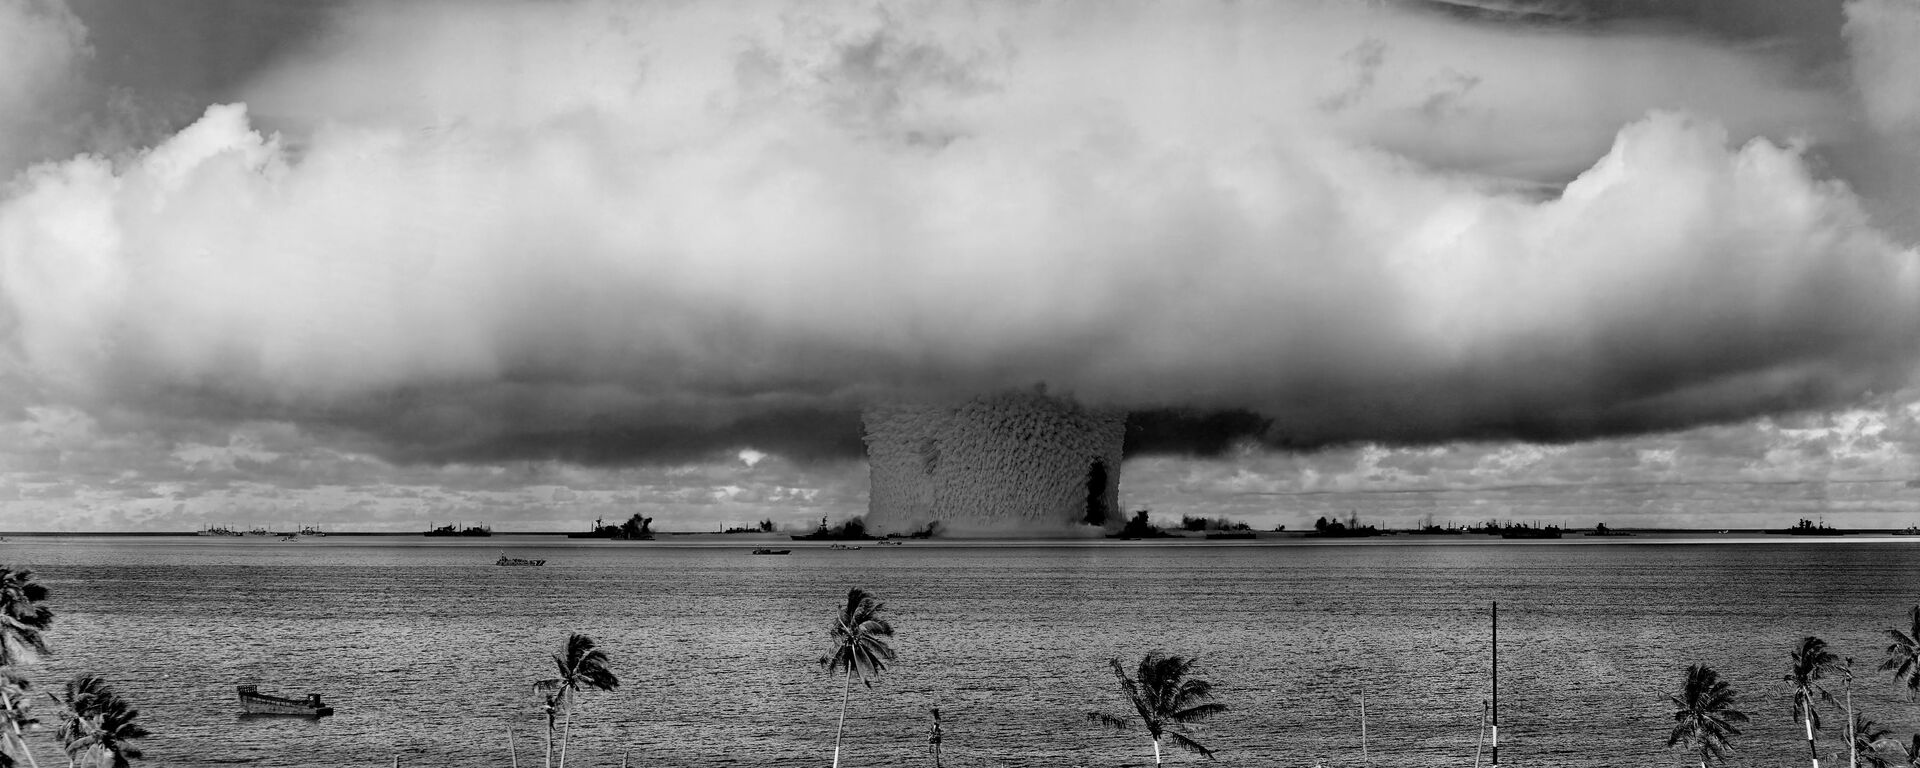 Una prueba nuclear realizada por EEUU en el atolón Bikini, en 1946 (imagen referencial) - Sputnik Mundo, 1920, 21.05.2020